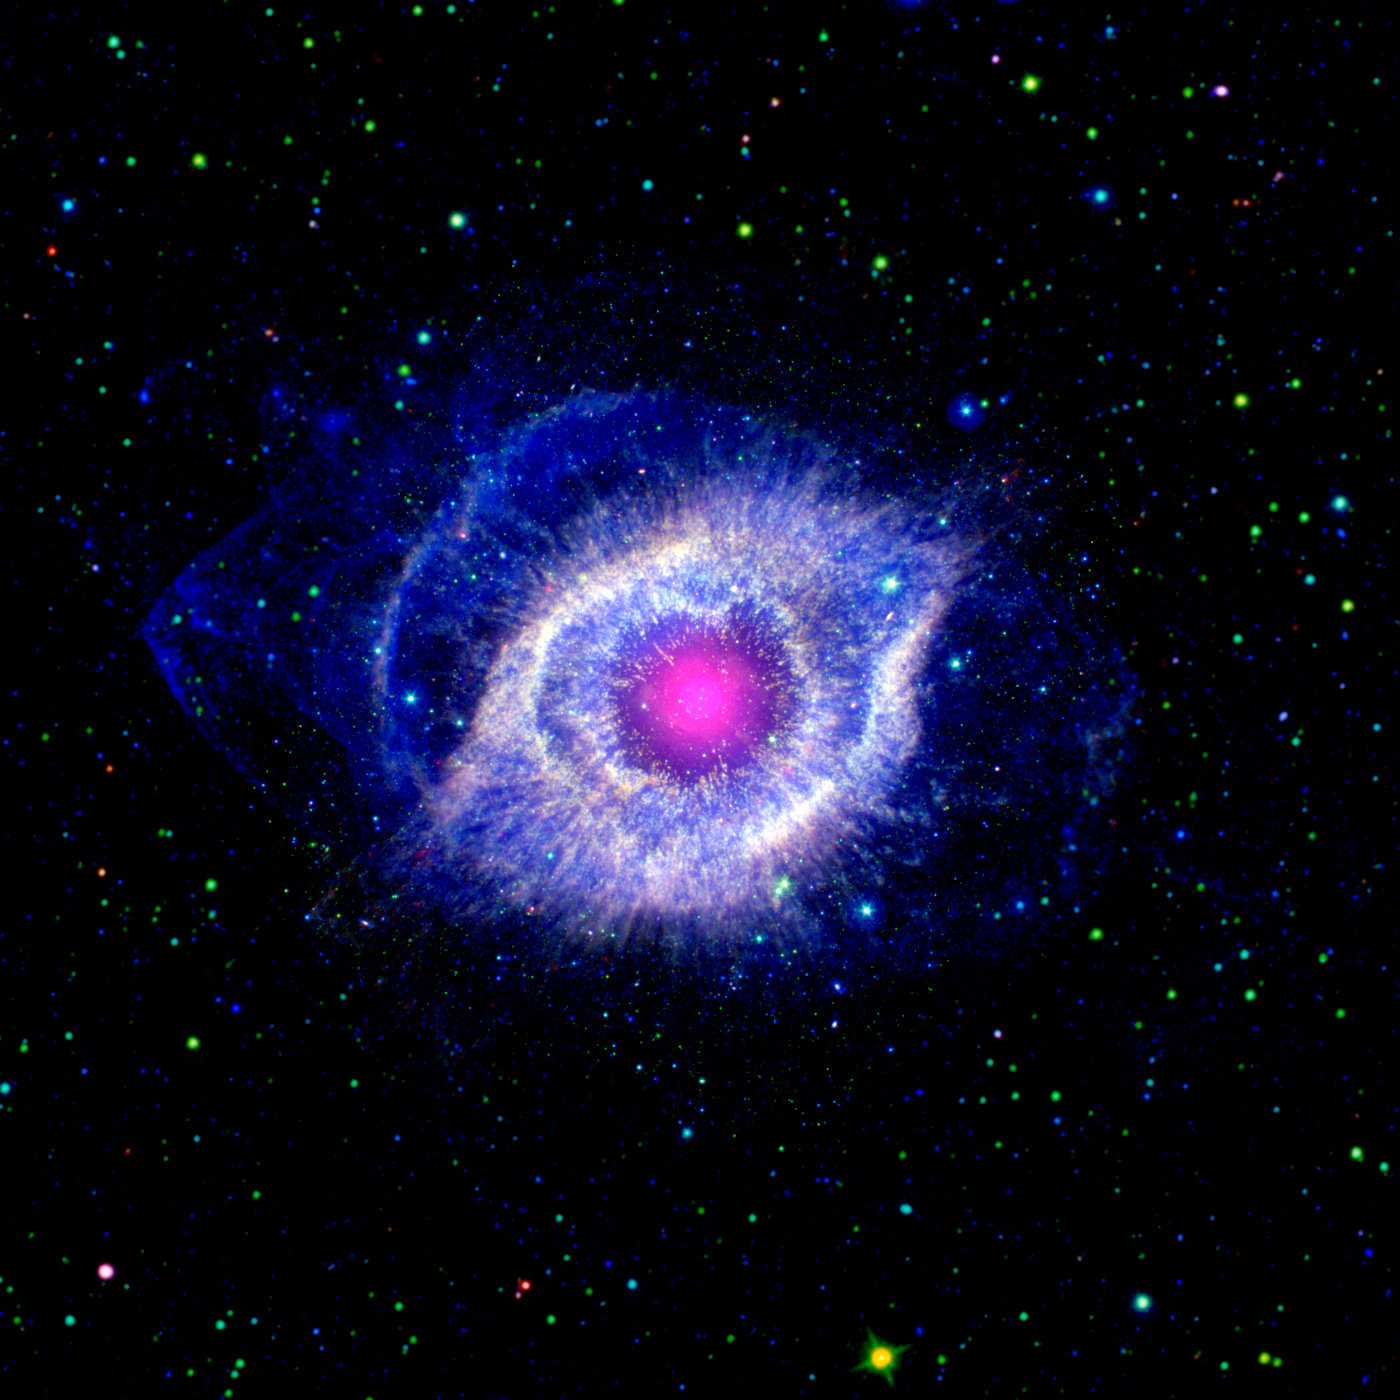 Ein Foto von NGC 7293, auch als Helixnebel bekannt. Der Nebel sieht von der Erde aus wie ein riesiges blau-weißes Auge, das von leuchtend blauen Wolken umgeben ist. Den Hintergrund bildet das schwarze Weltall, gesprenkelt mit unzähligen, teilweise recht großen, grün-blauen Sternen. Im Inneren des Auges leuchtet wie eine Pupille kreisförmig ein rosafarbener Nebel.